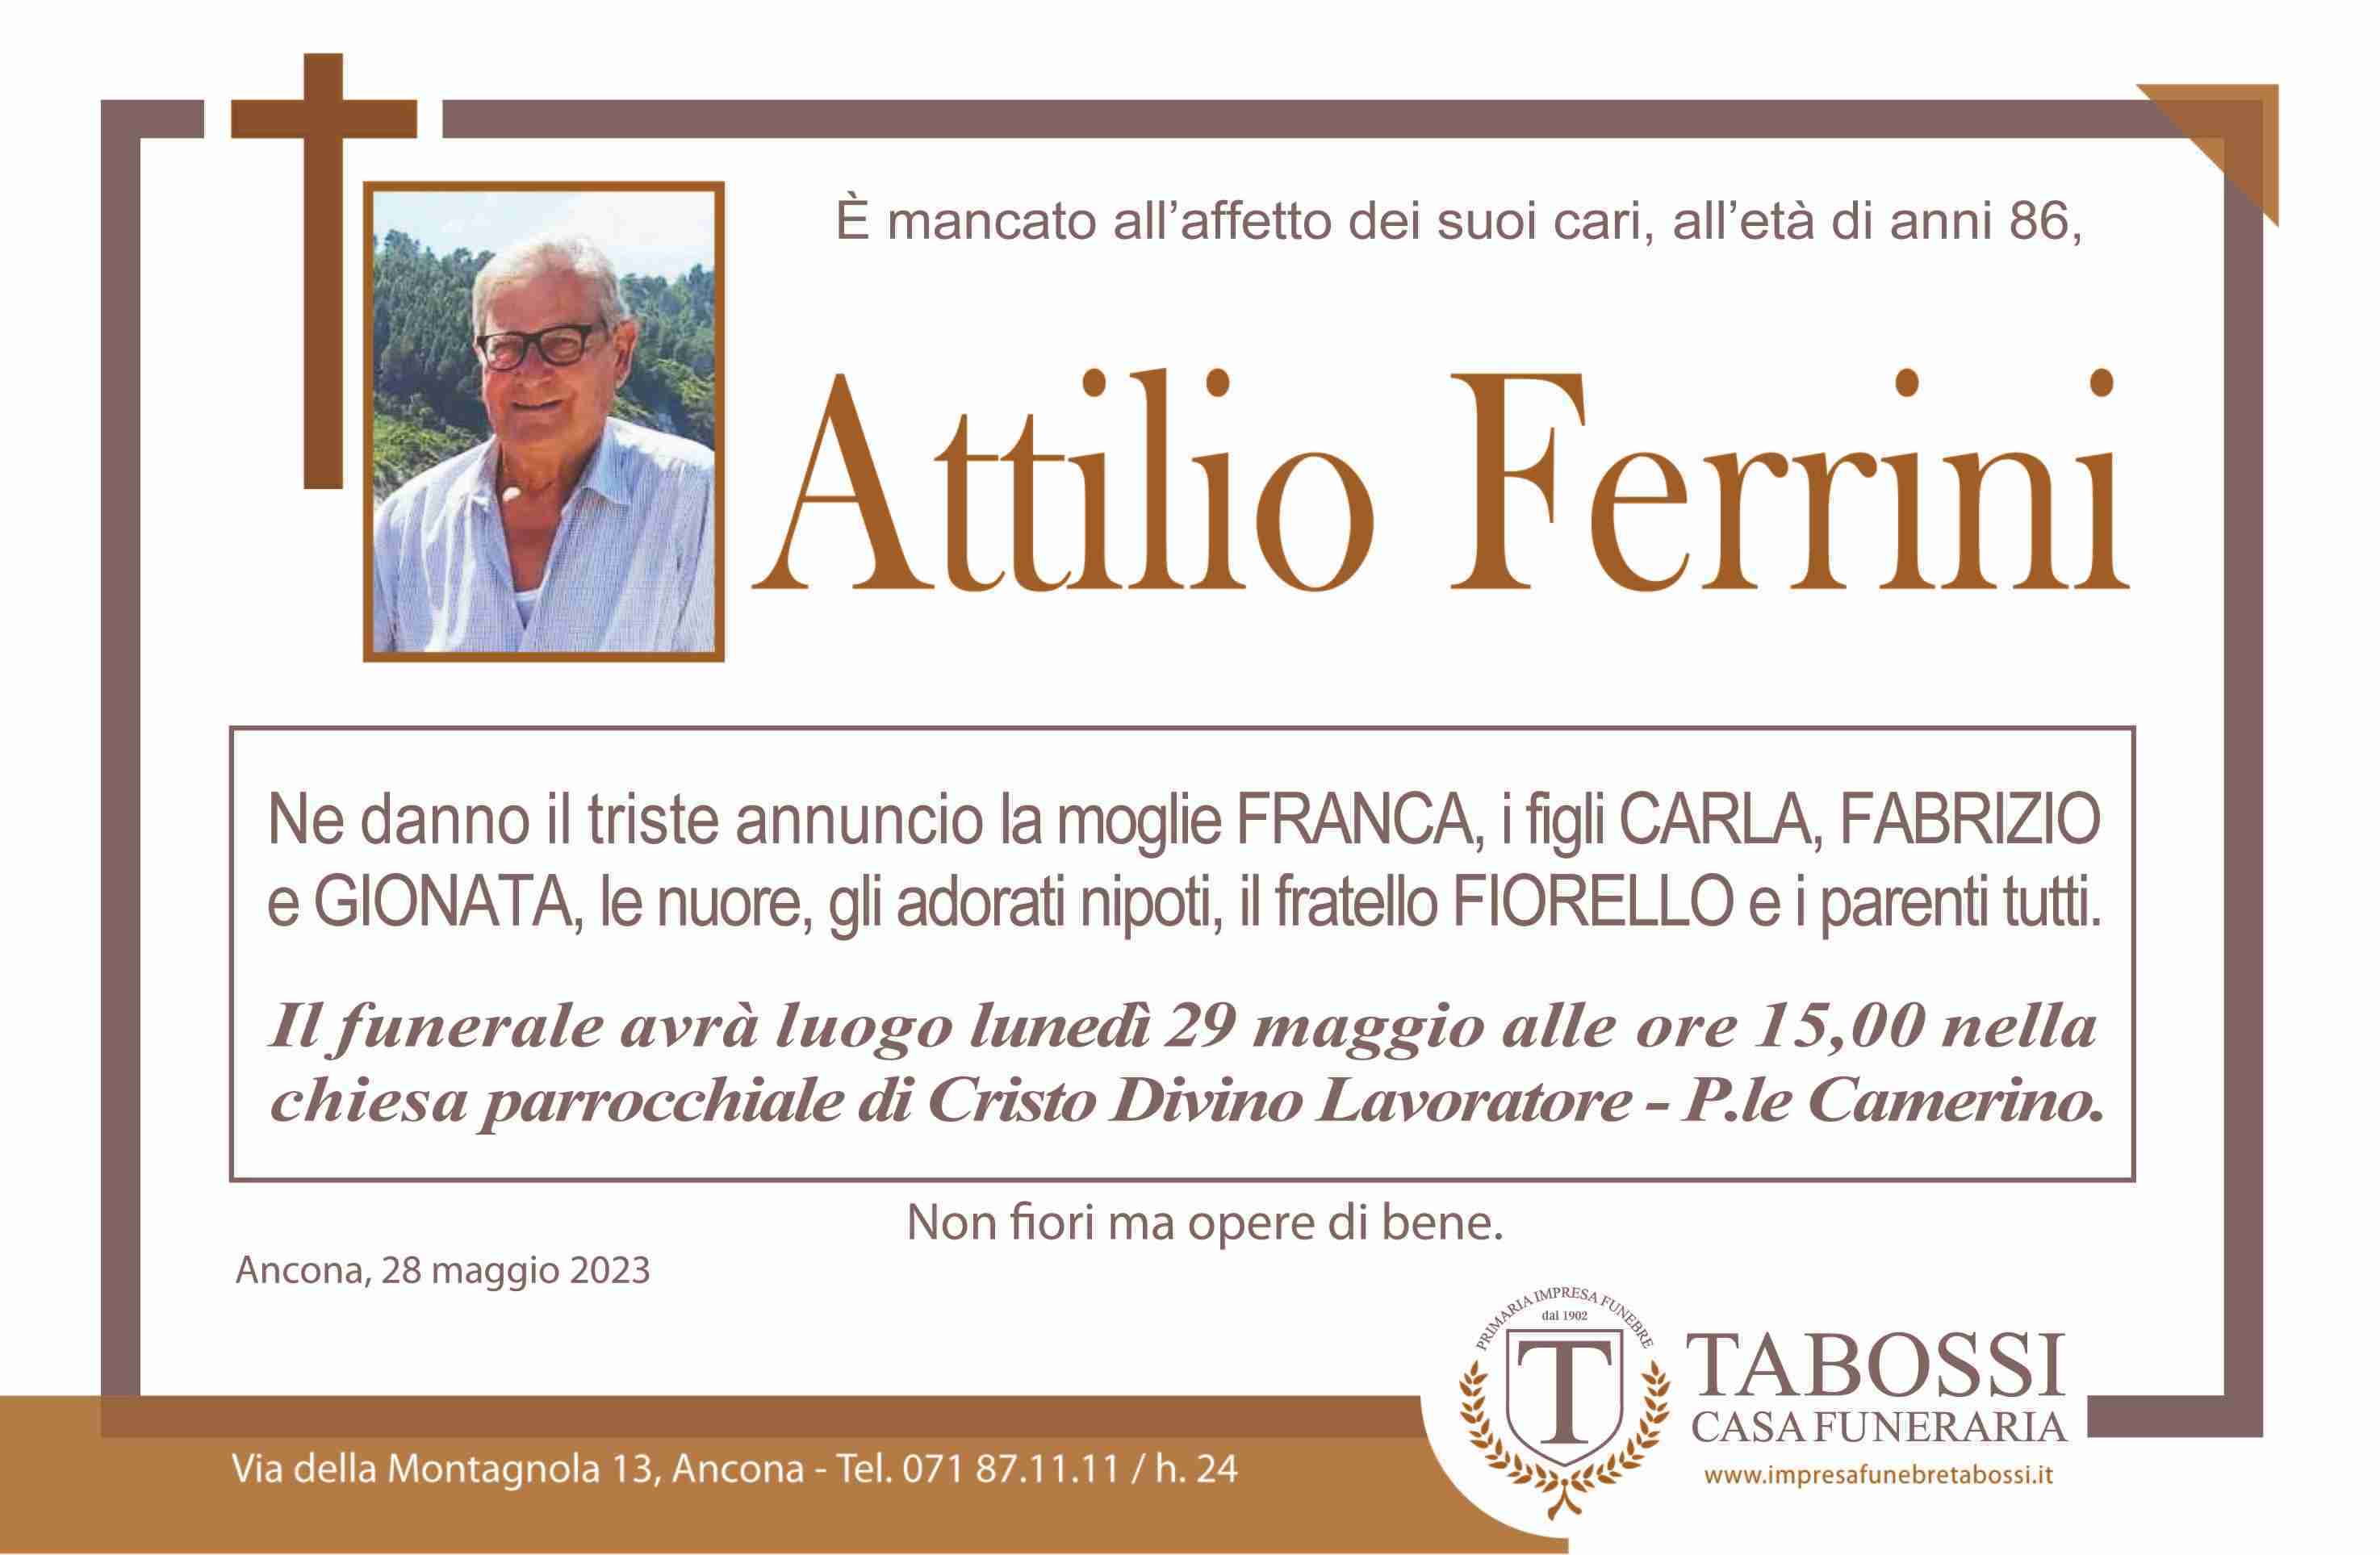 Attilio Ferrini